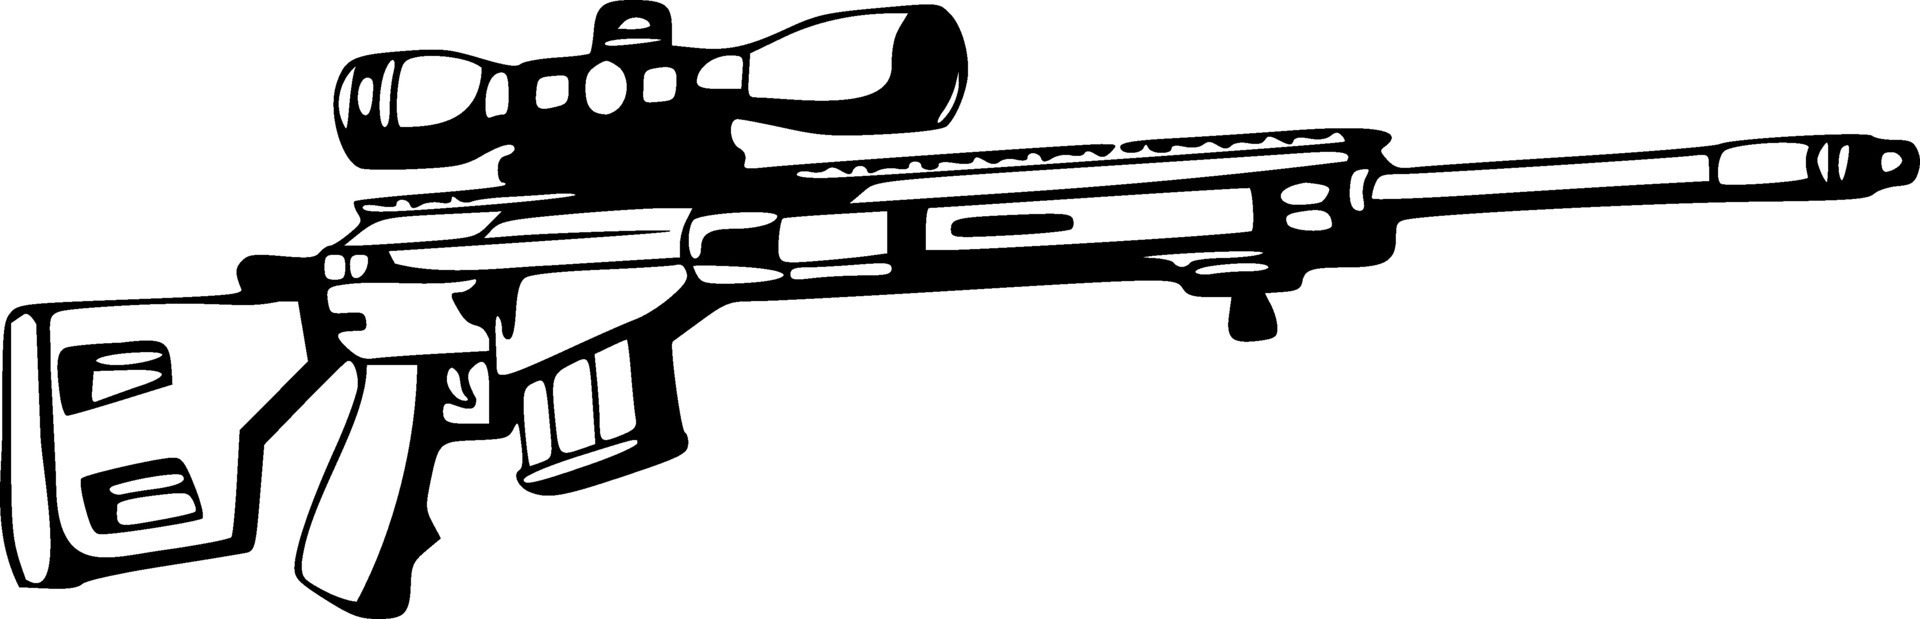 icono de rifle de caza de francotirador sobre fondo blanco. signo de rifle  de francotirador. estilo plano 10311166 Vector en Vecteezy